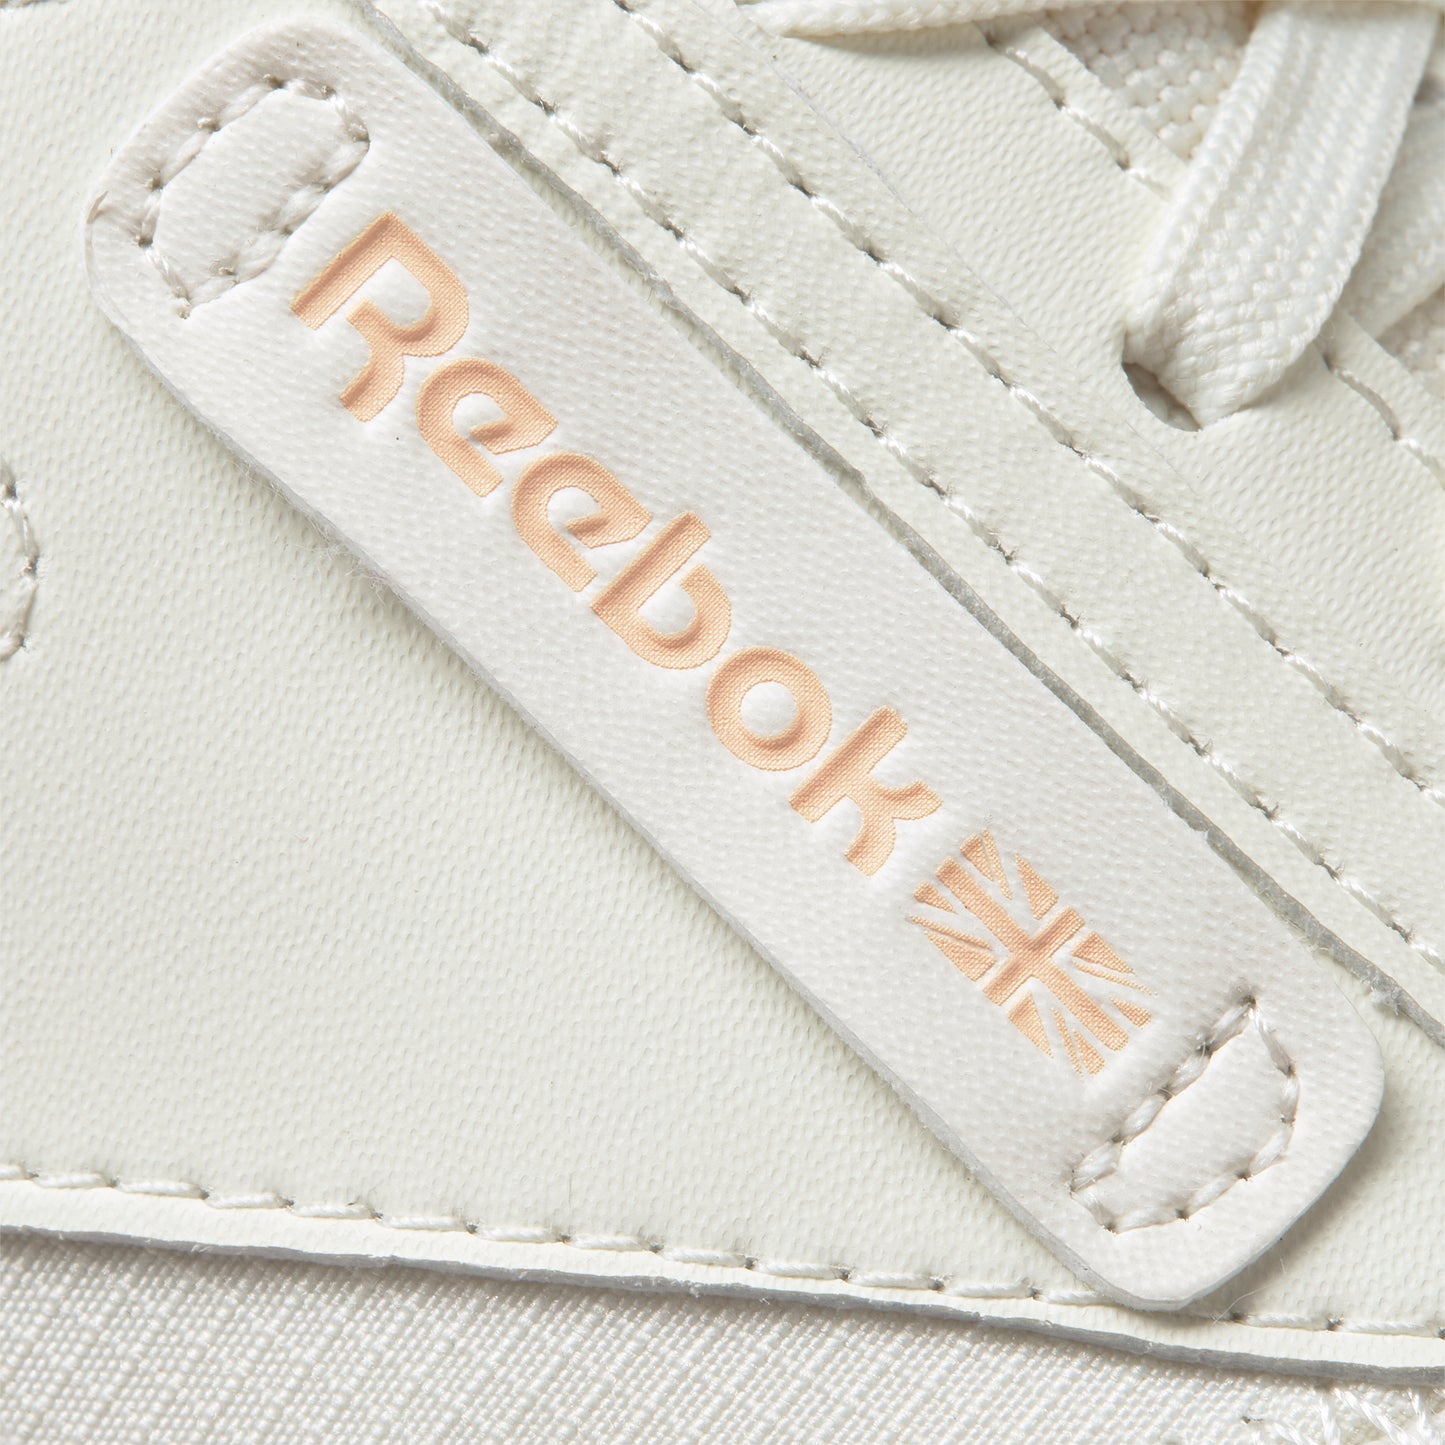 Reebok Footwear Women Club C Legacy Shoes Chalk/Aurorg/Twicor